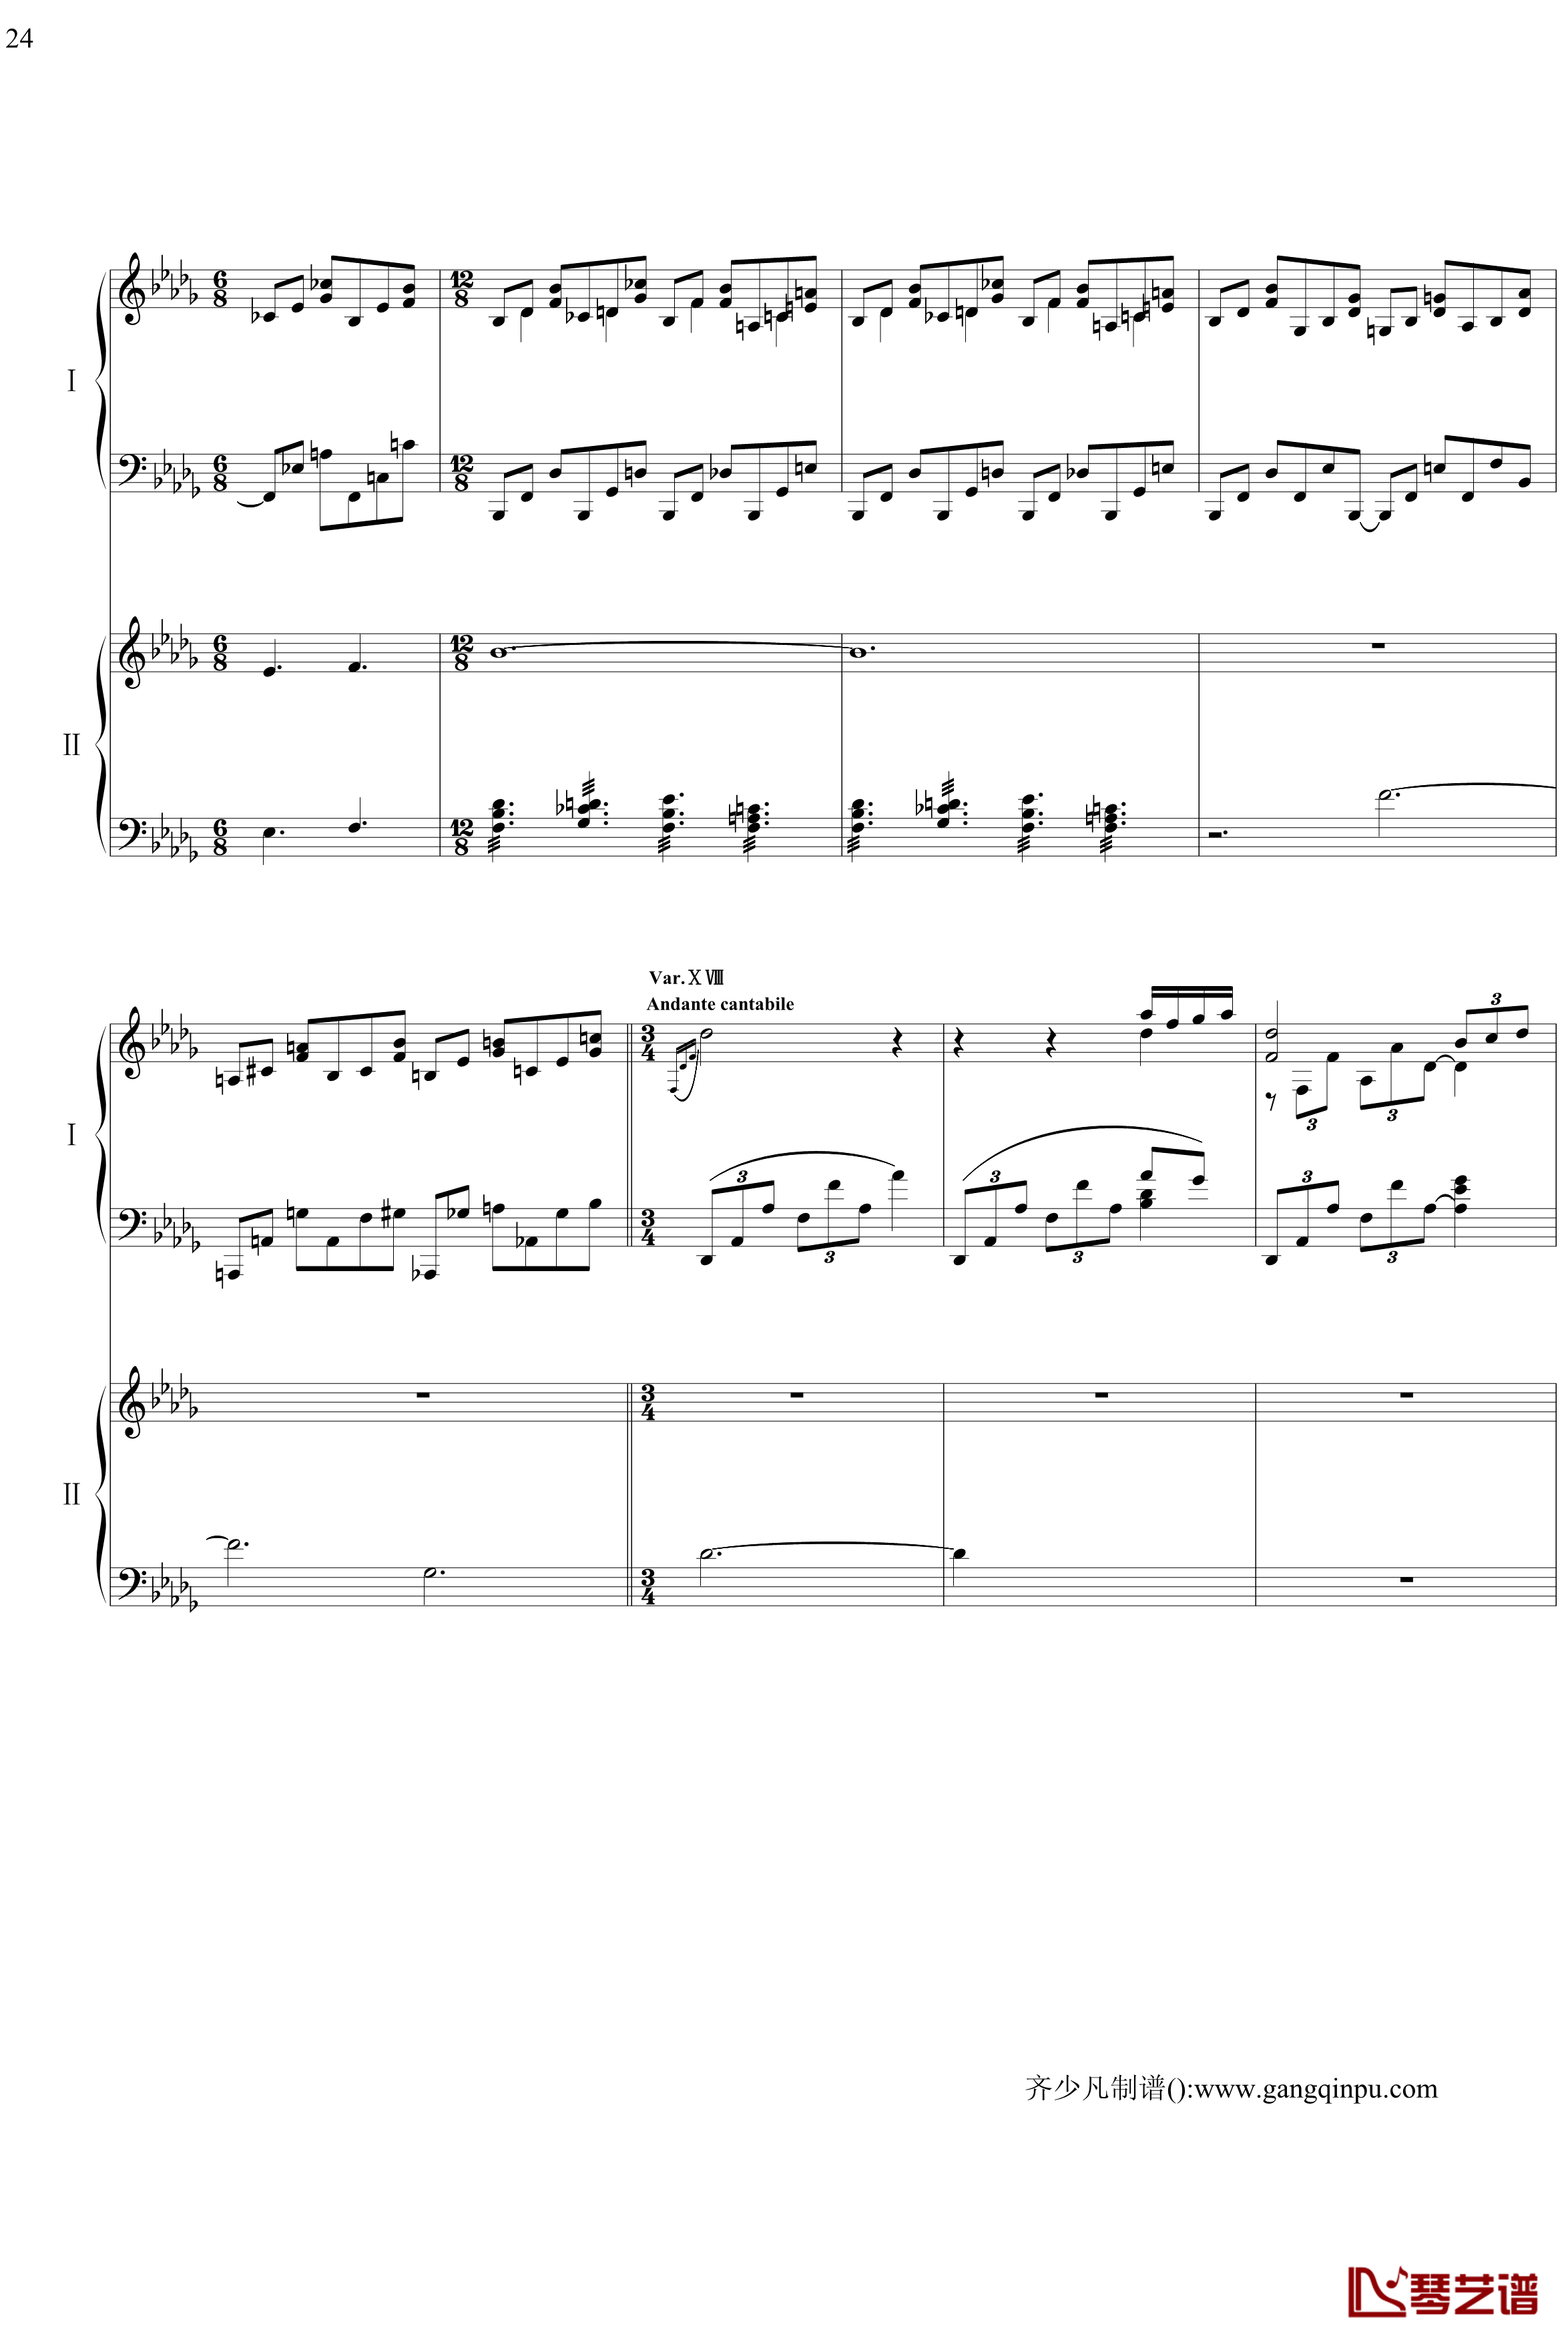 帕格尼尼主题狂想曲钢琴谱-11~18变奏-拉赫马尼若夫24